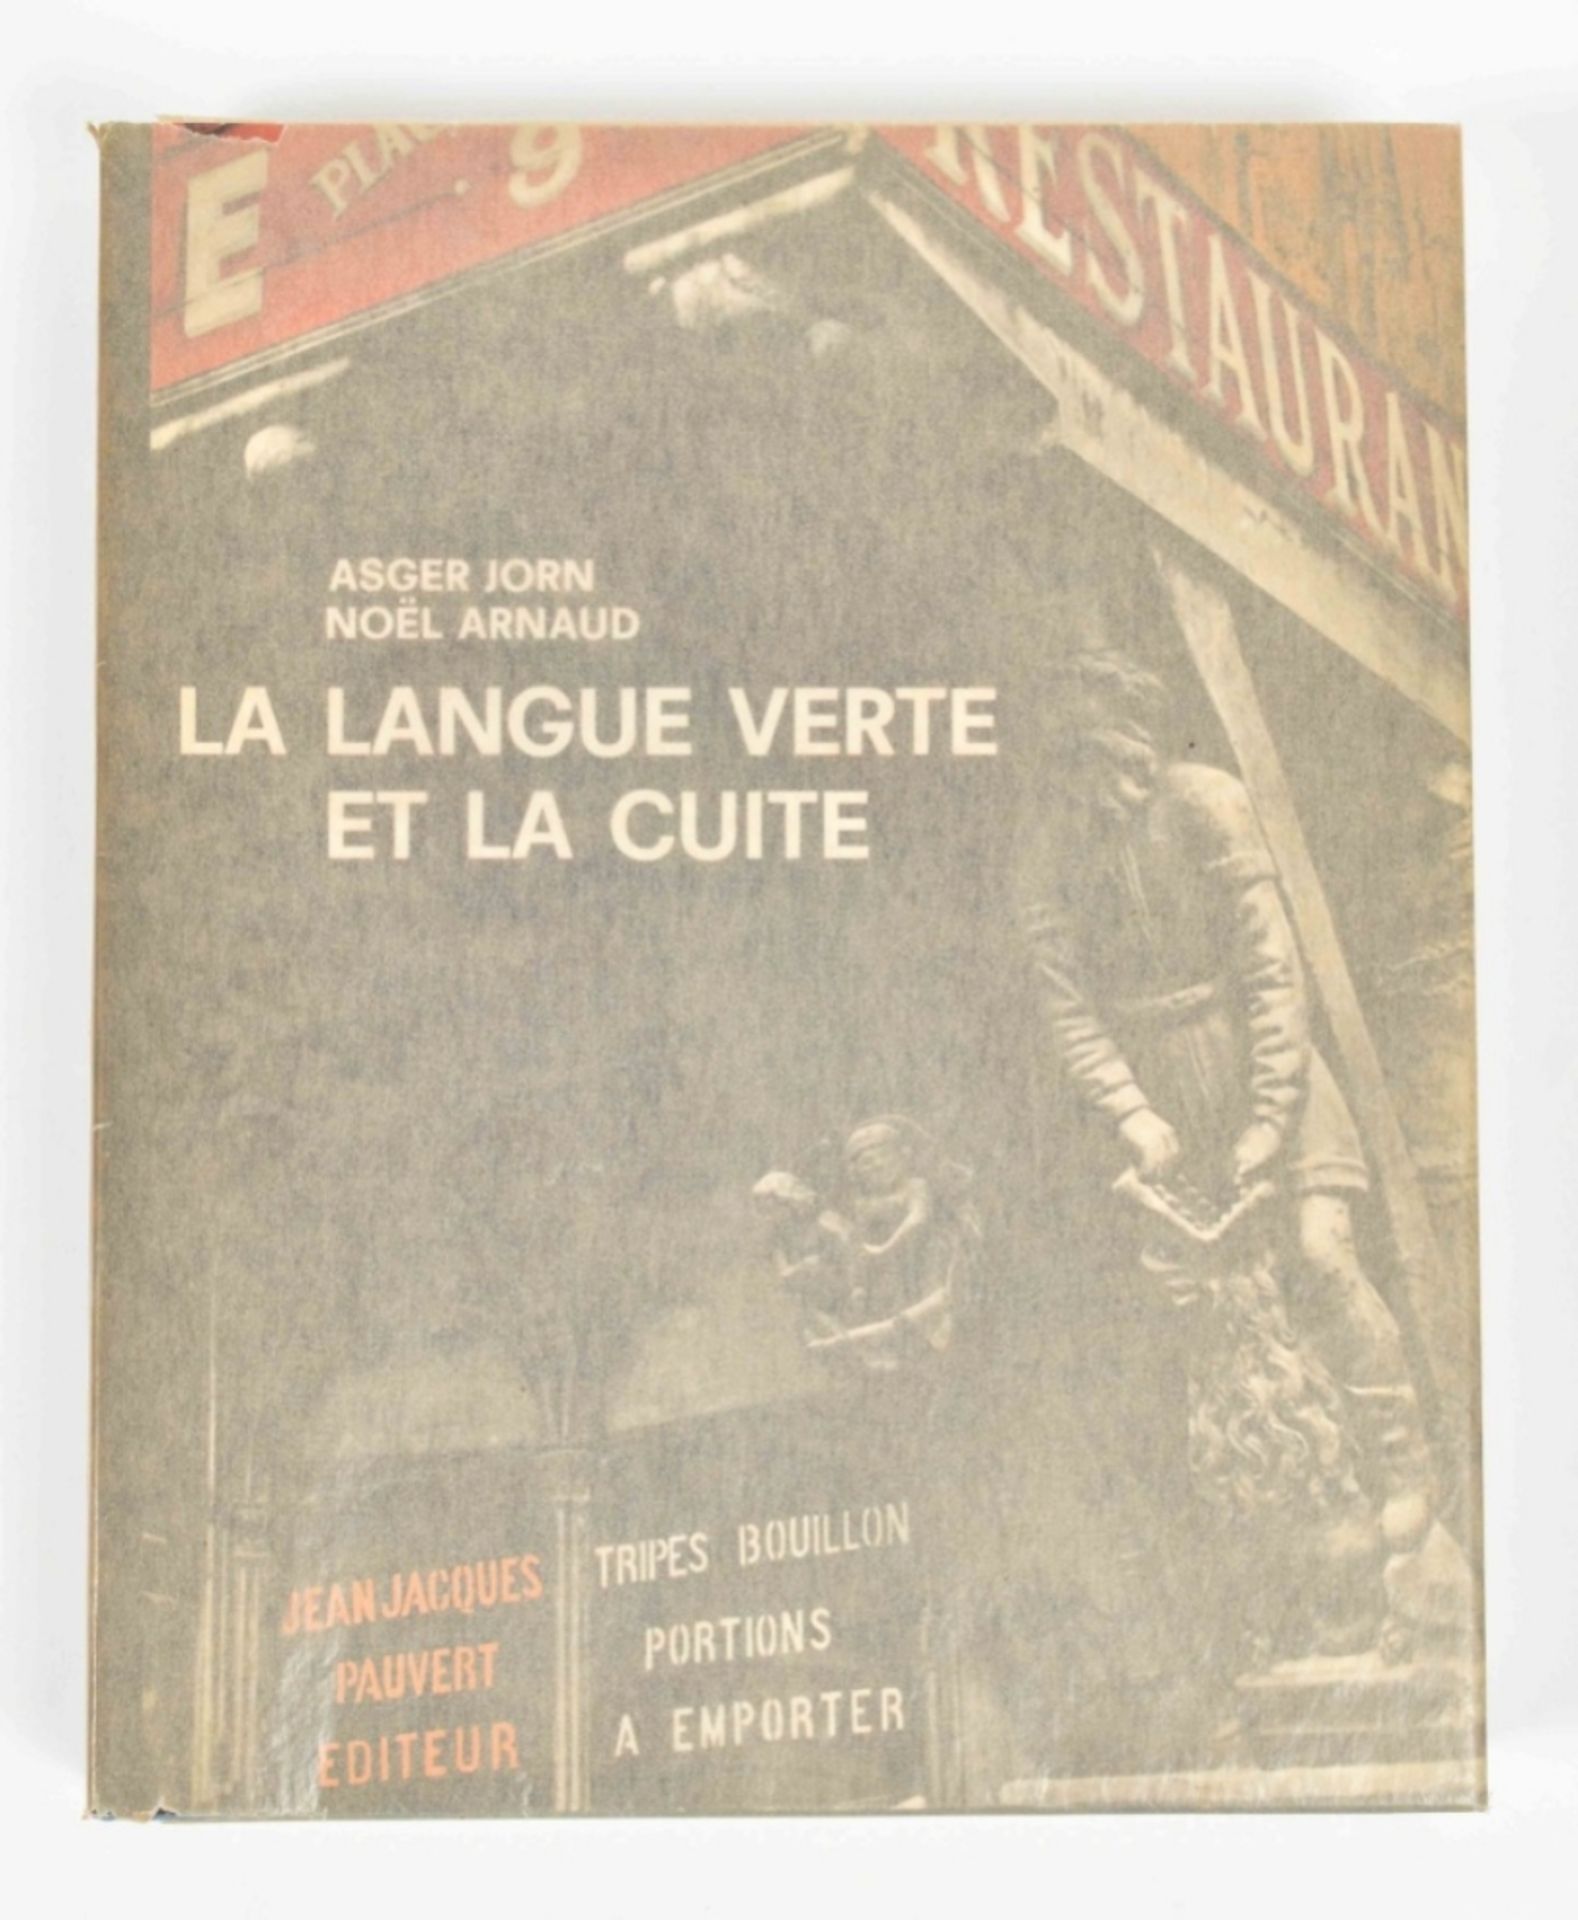 [Situationists] Asger Jorn, La Langue verte et la cuite - Image 4 of 10